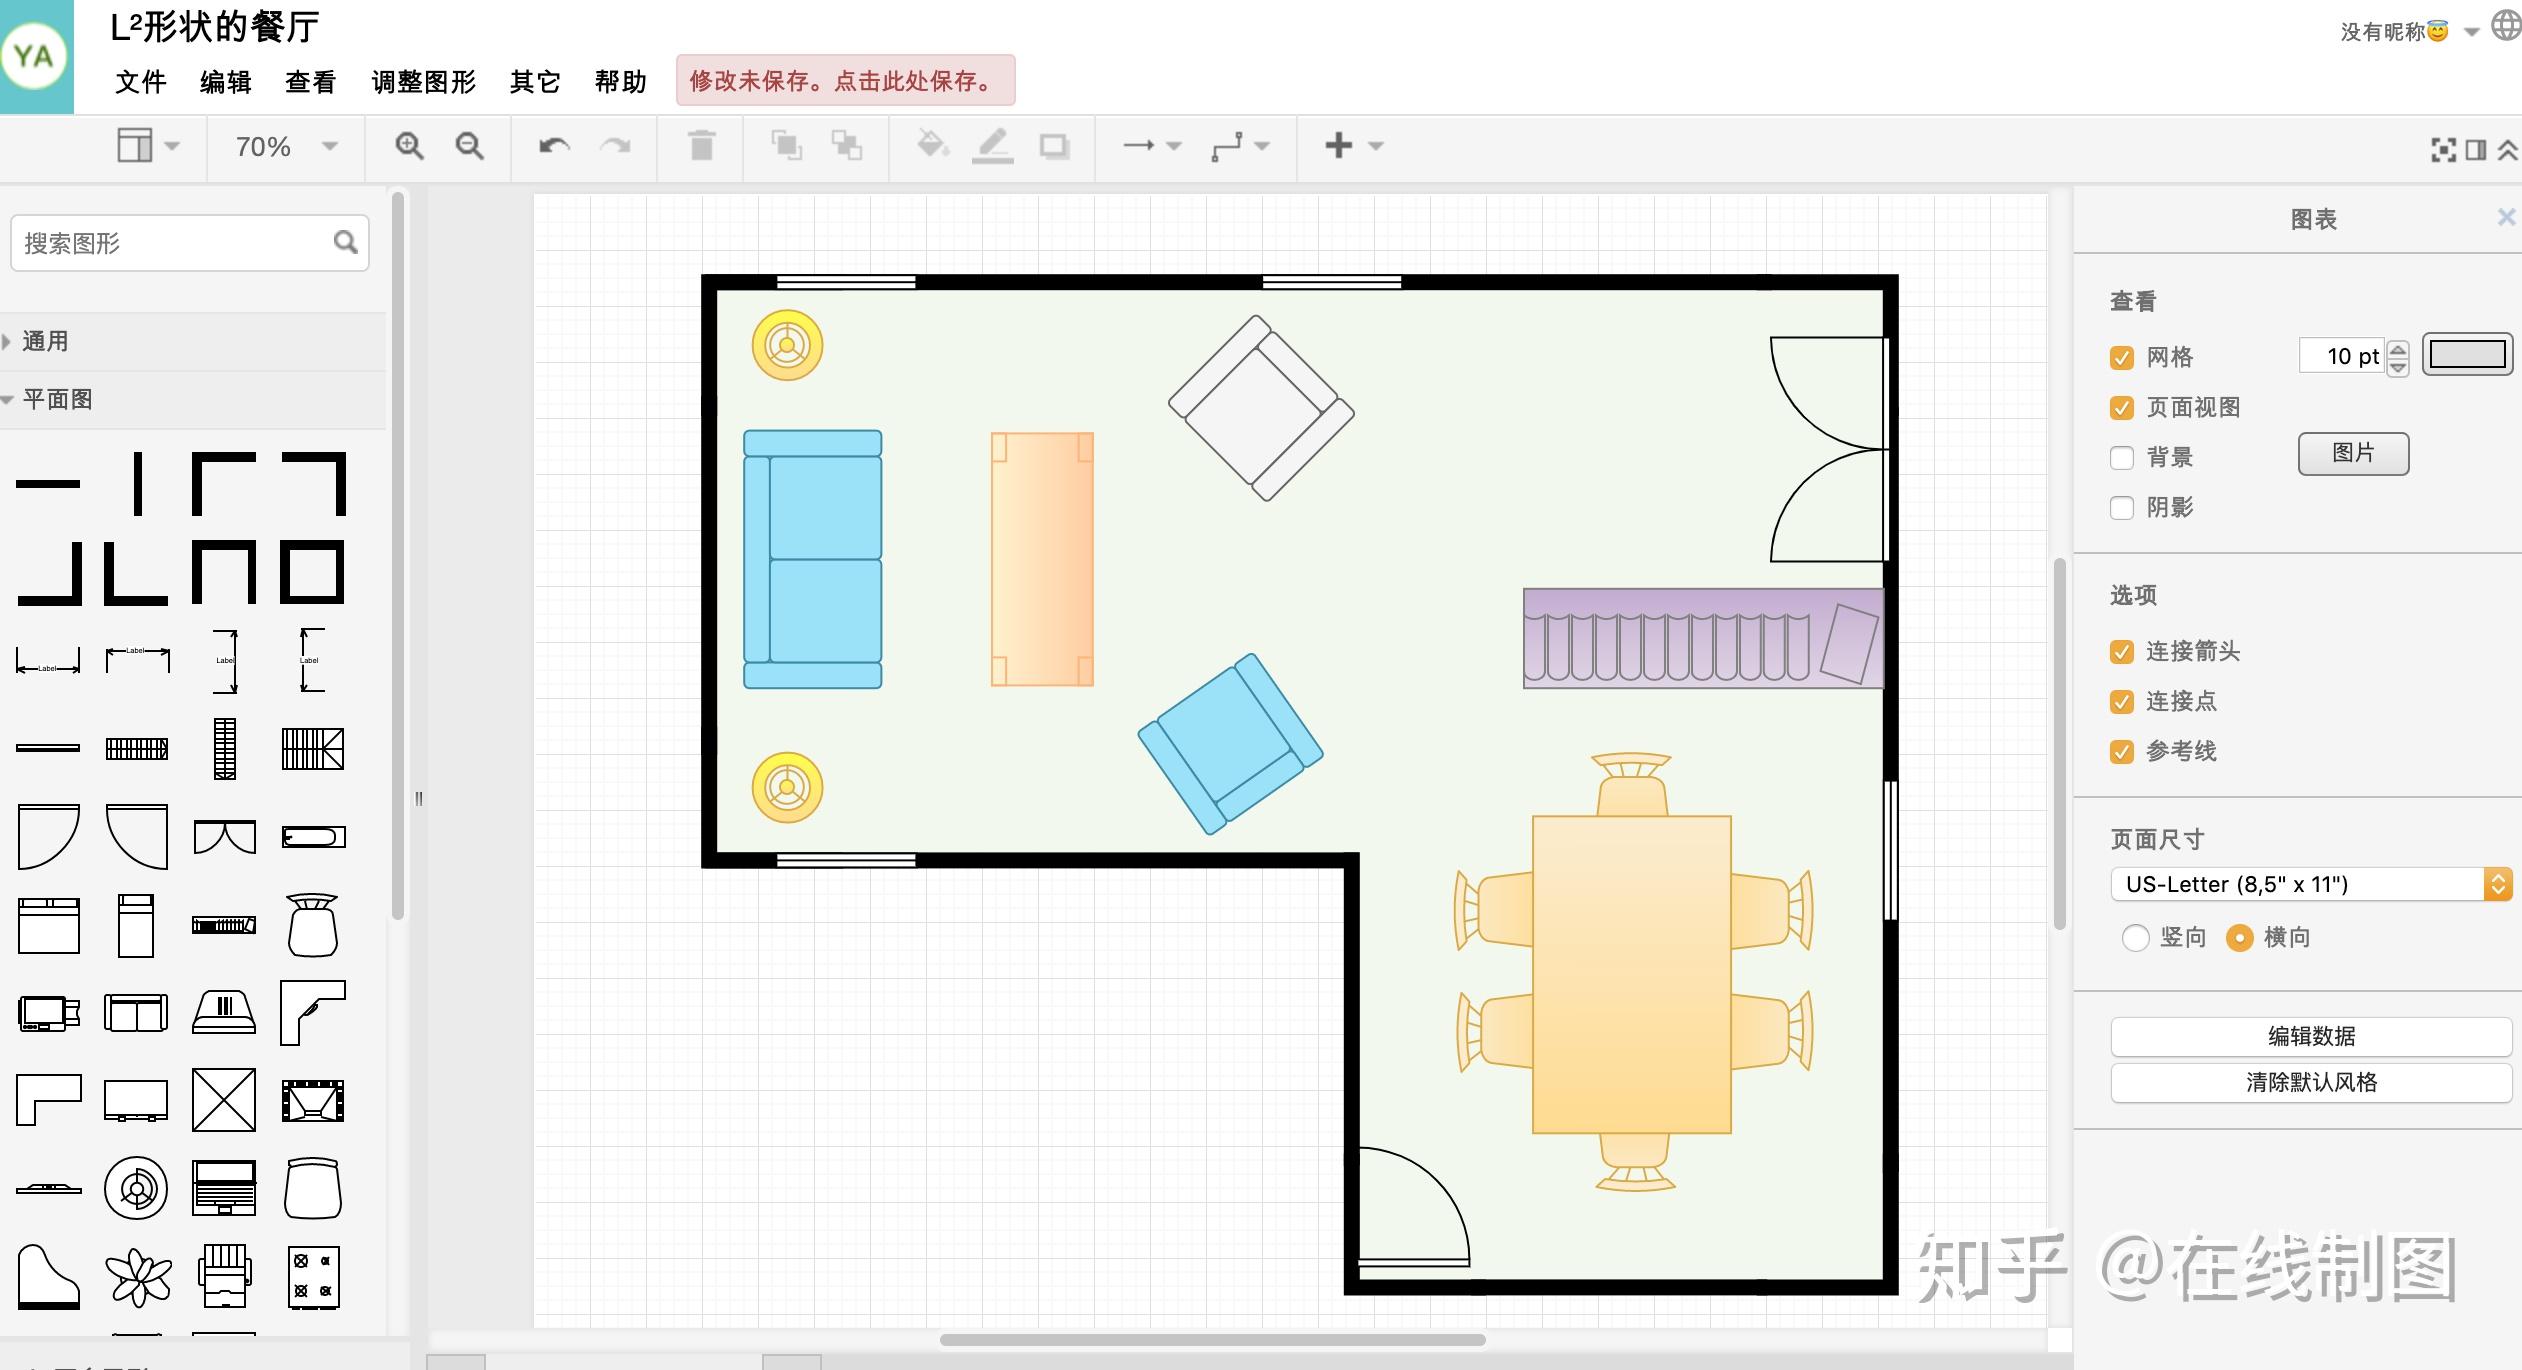 求室内设计彩色平面图库。用PS做彩色平面图时所用到的家具素材。-